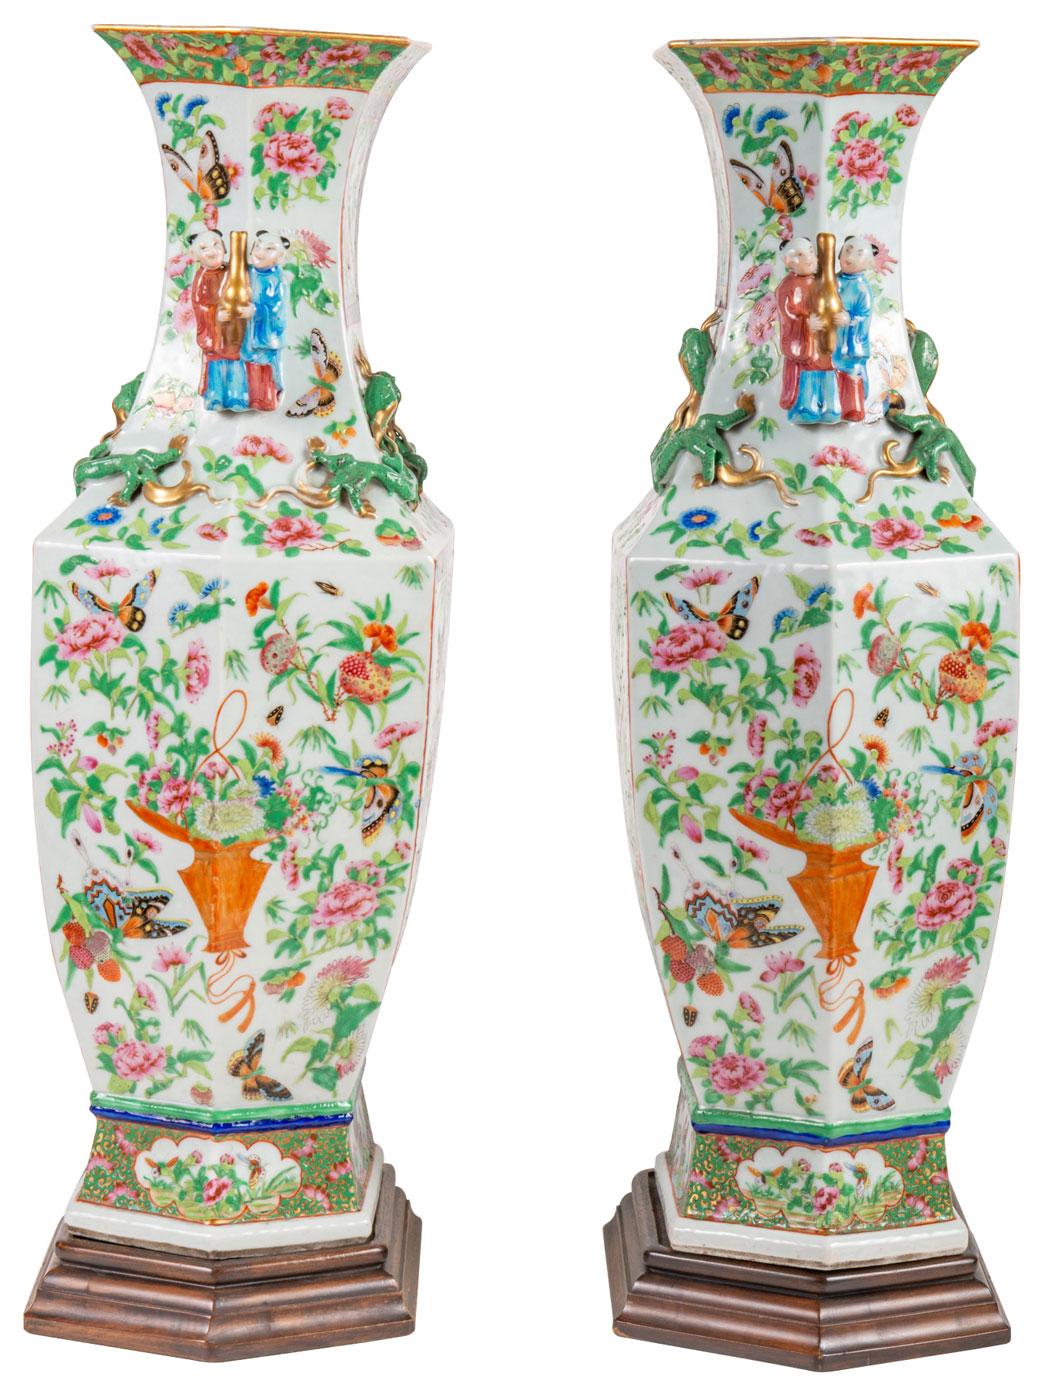 Une paire de vases médaillons de très bonne qualité, datant du milieu du 19e siècle, de style chinois Canton / Rose, sur pied. Chacune d'entre elles présente un fond blanc, un décor feuillagé vert avec des insectes exotiques, des fleurs et des